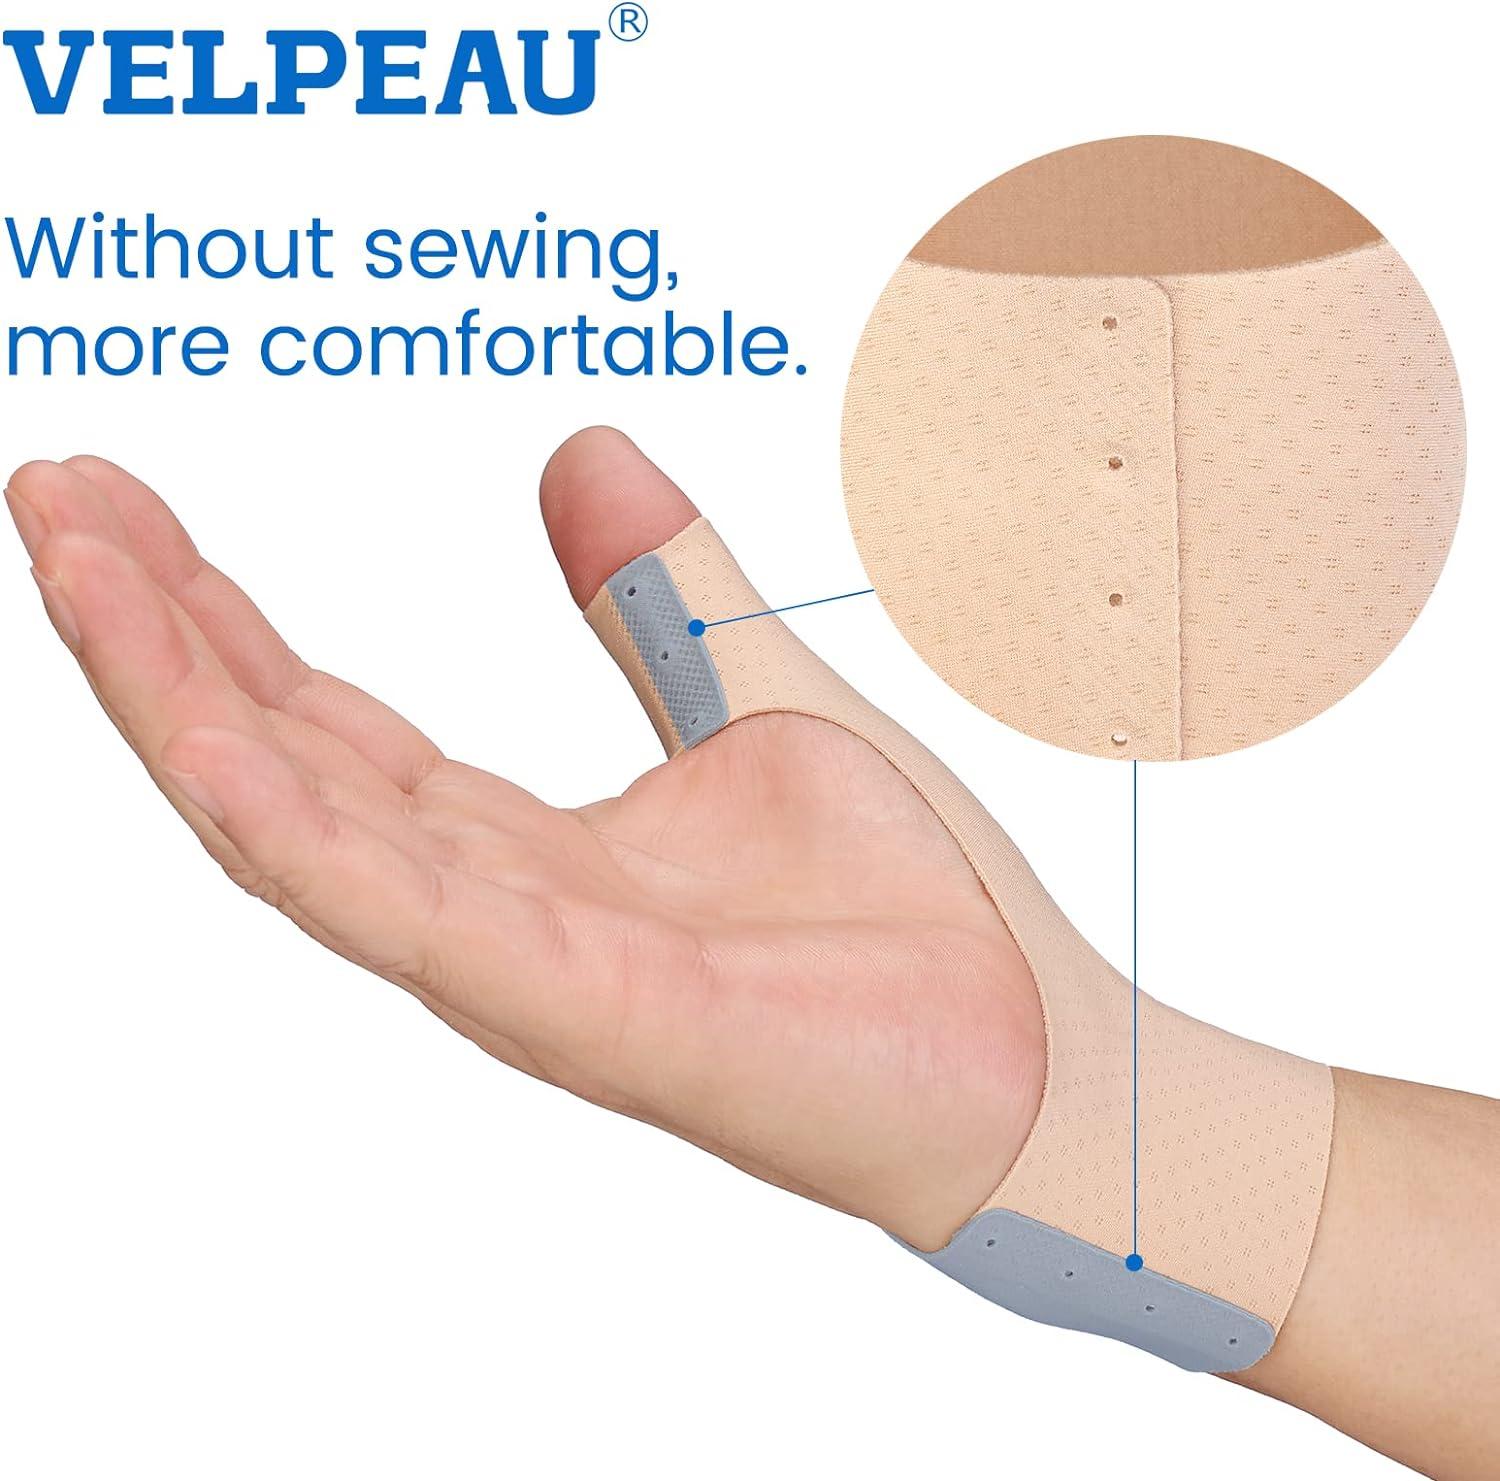  Velpeau Wrist Brace with Thumb Spica Splint for De